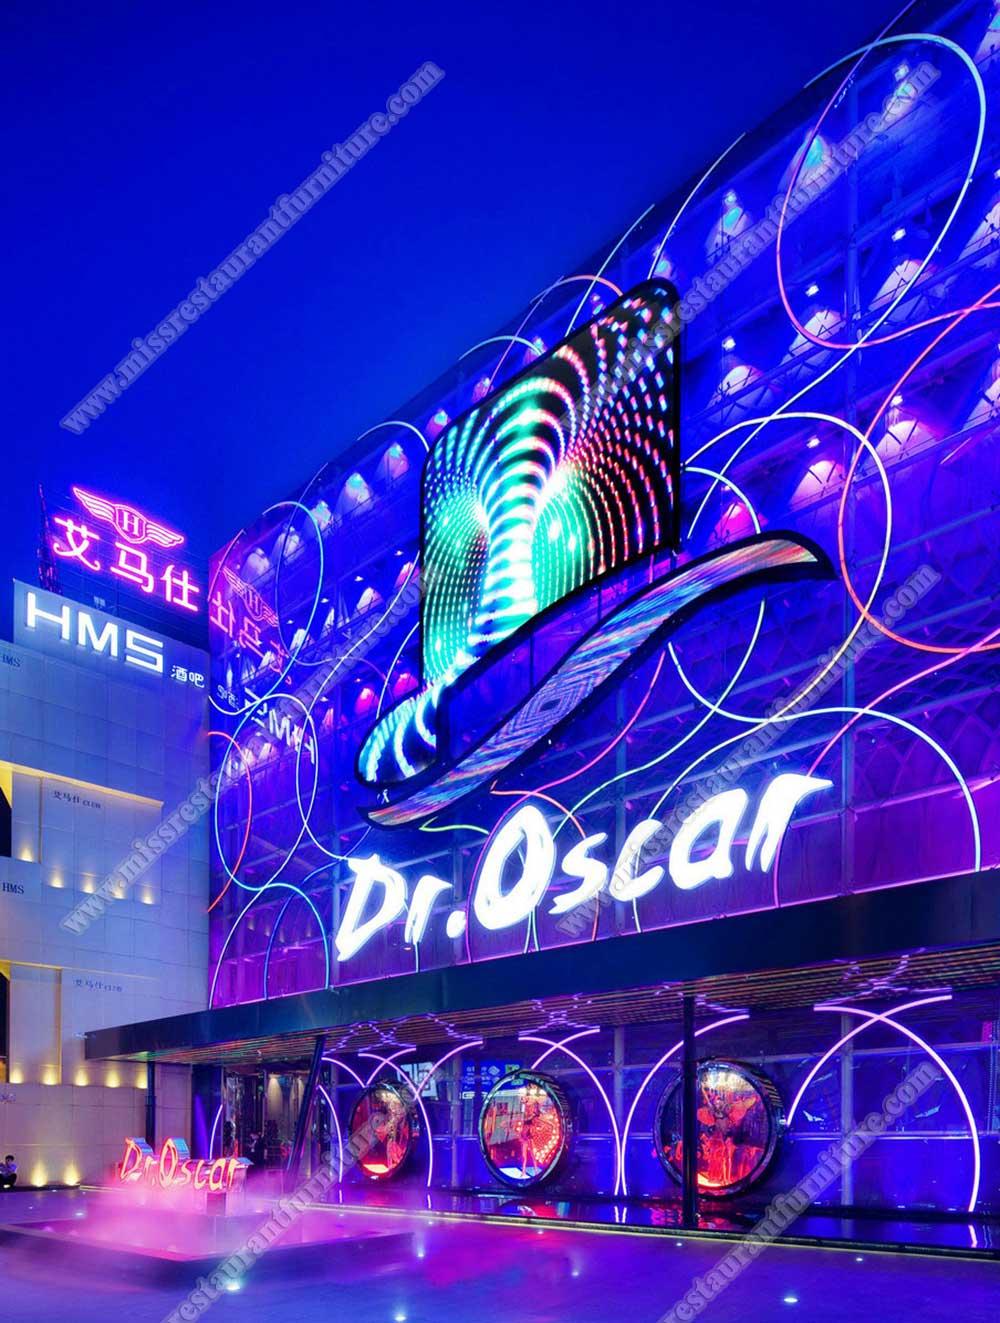 Singapore  Dr Oscar bar&club furniture_Singapore  Dr Oscar bar&club decoration